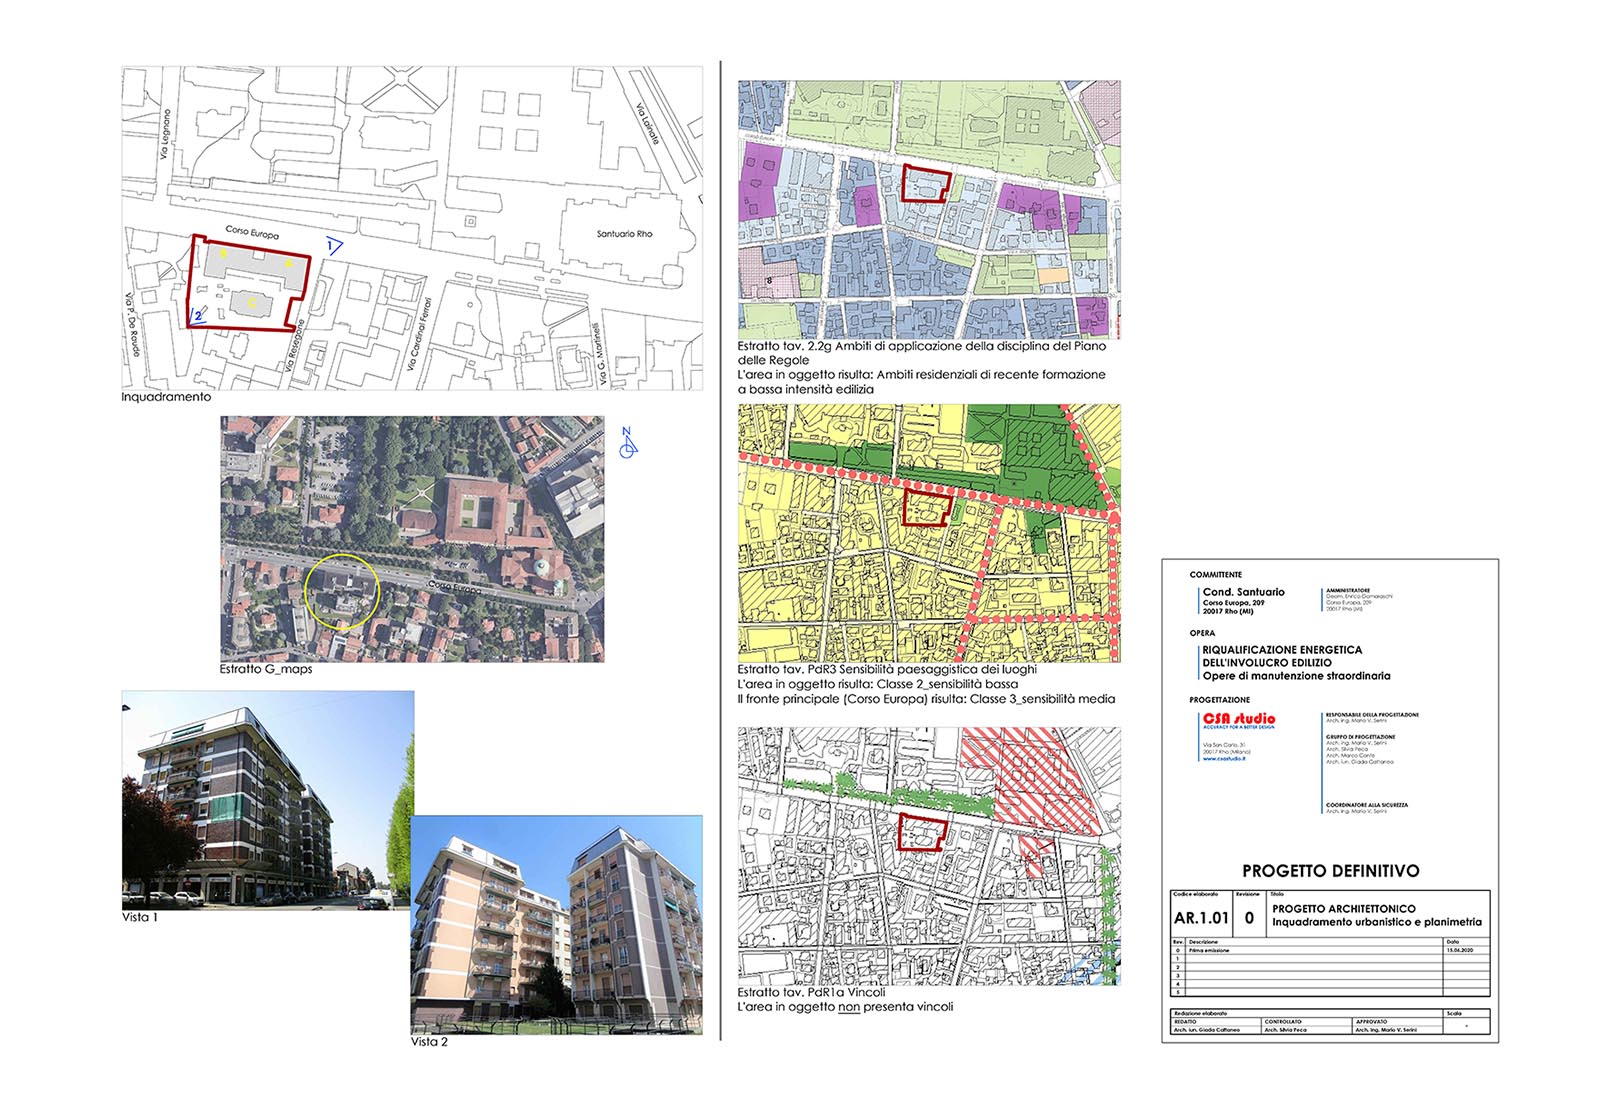 Condominio Santuario a Rho - Inquadramento urbanistico e planimetria